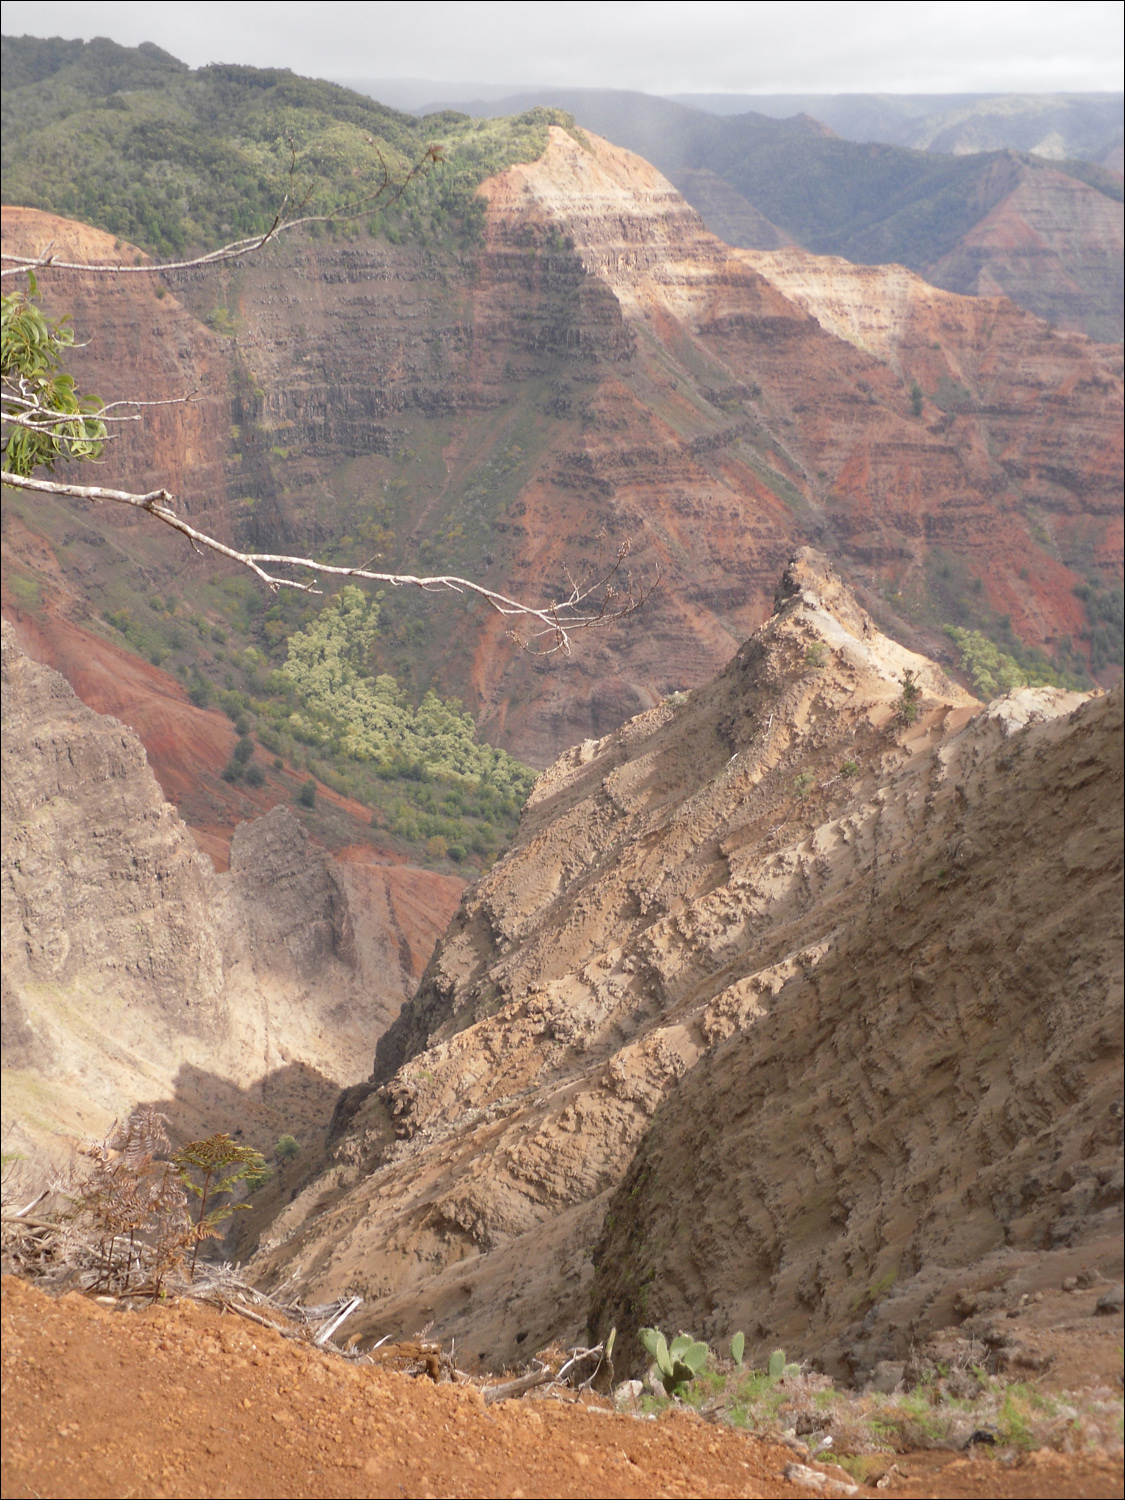 Views of Waimea canyon